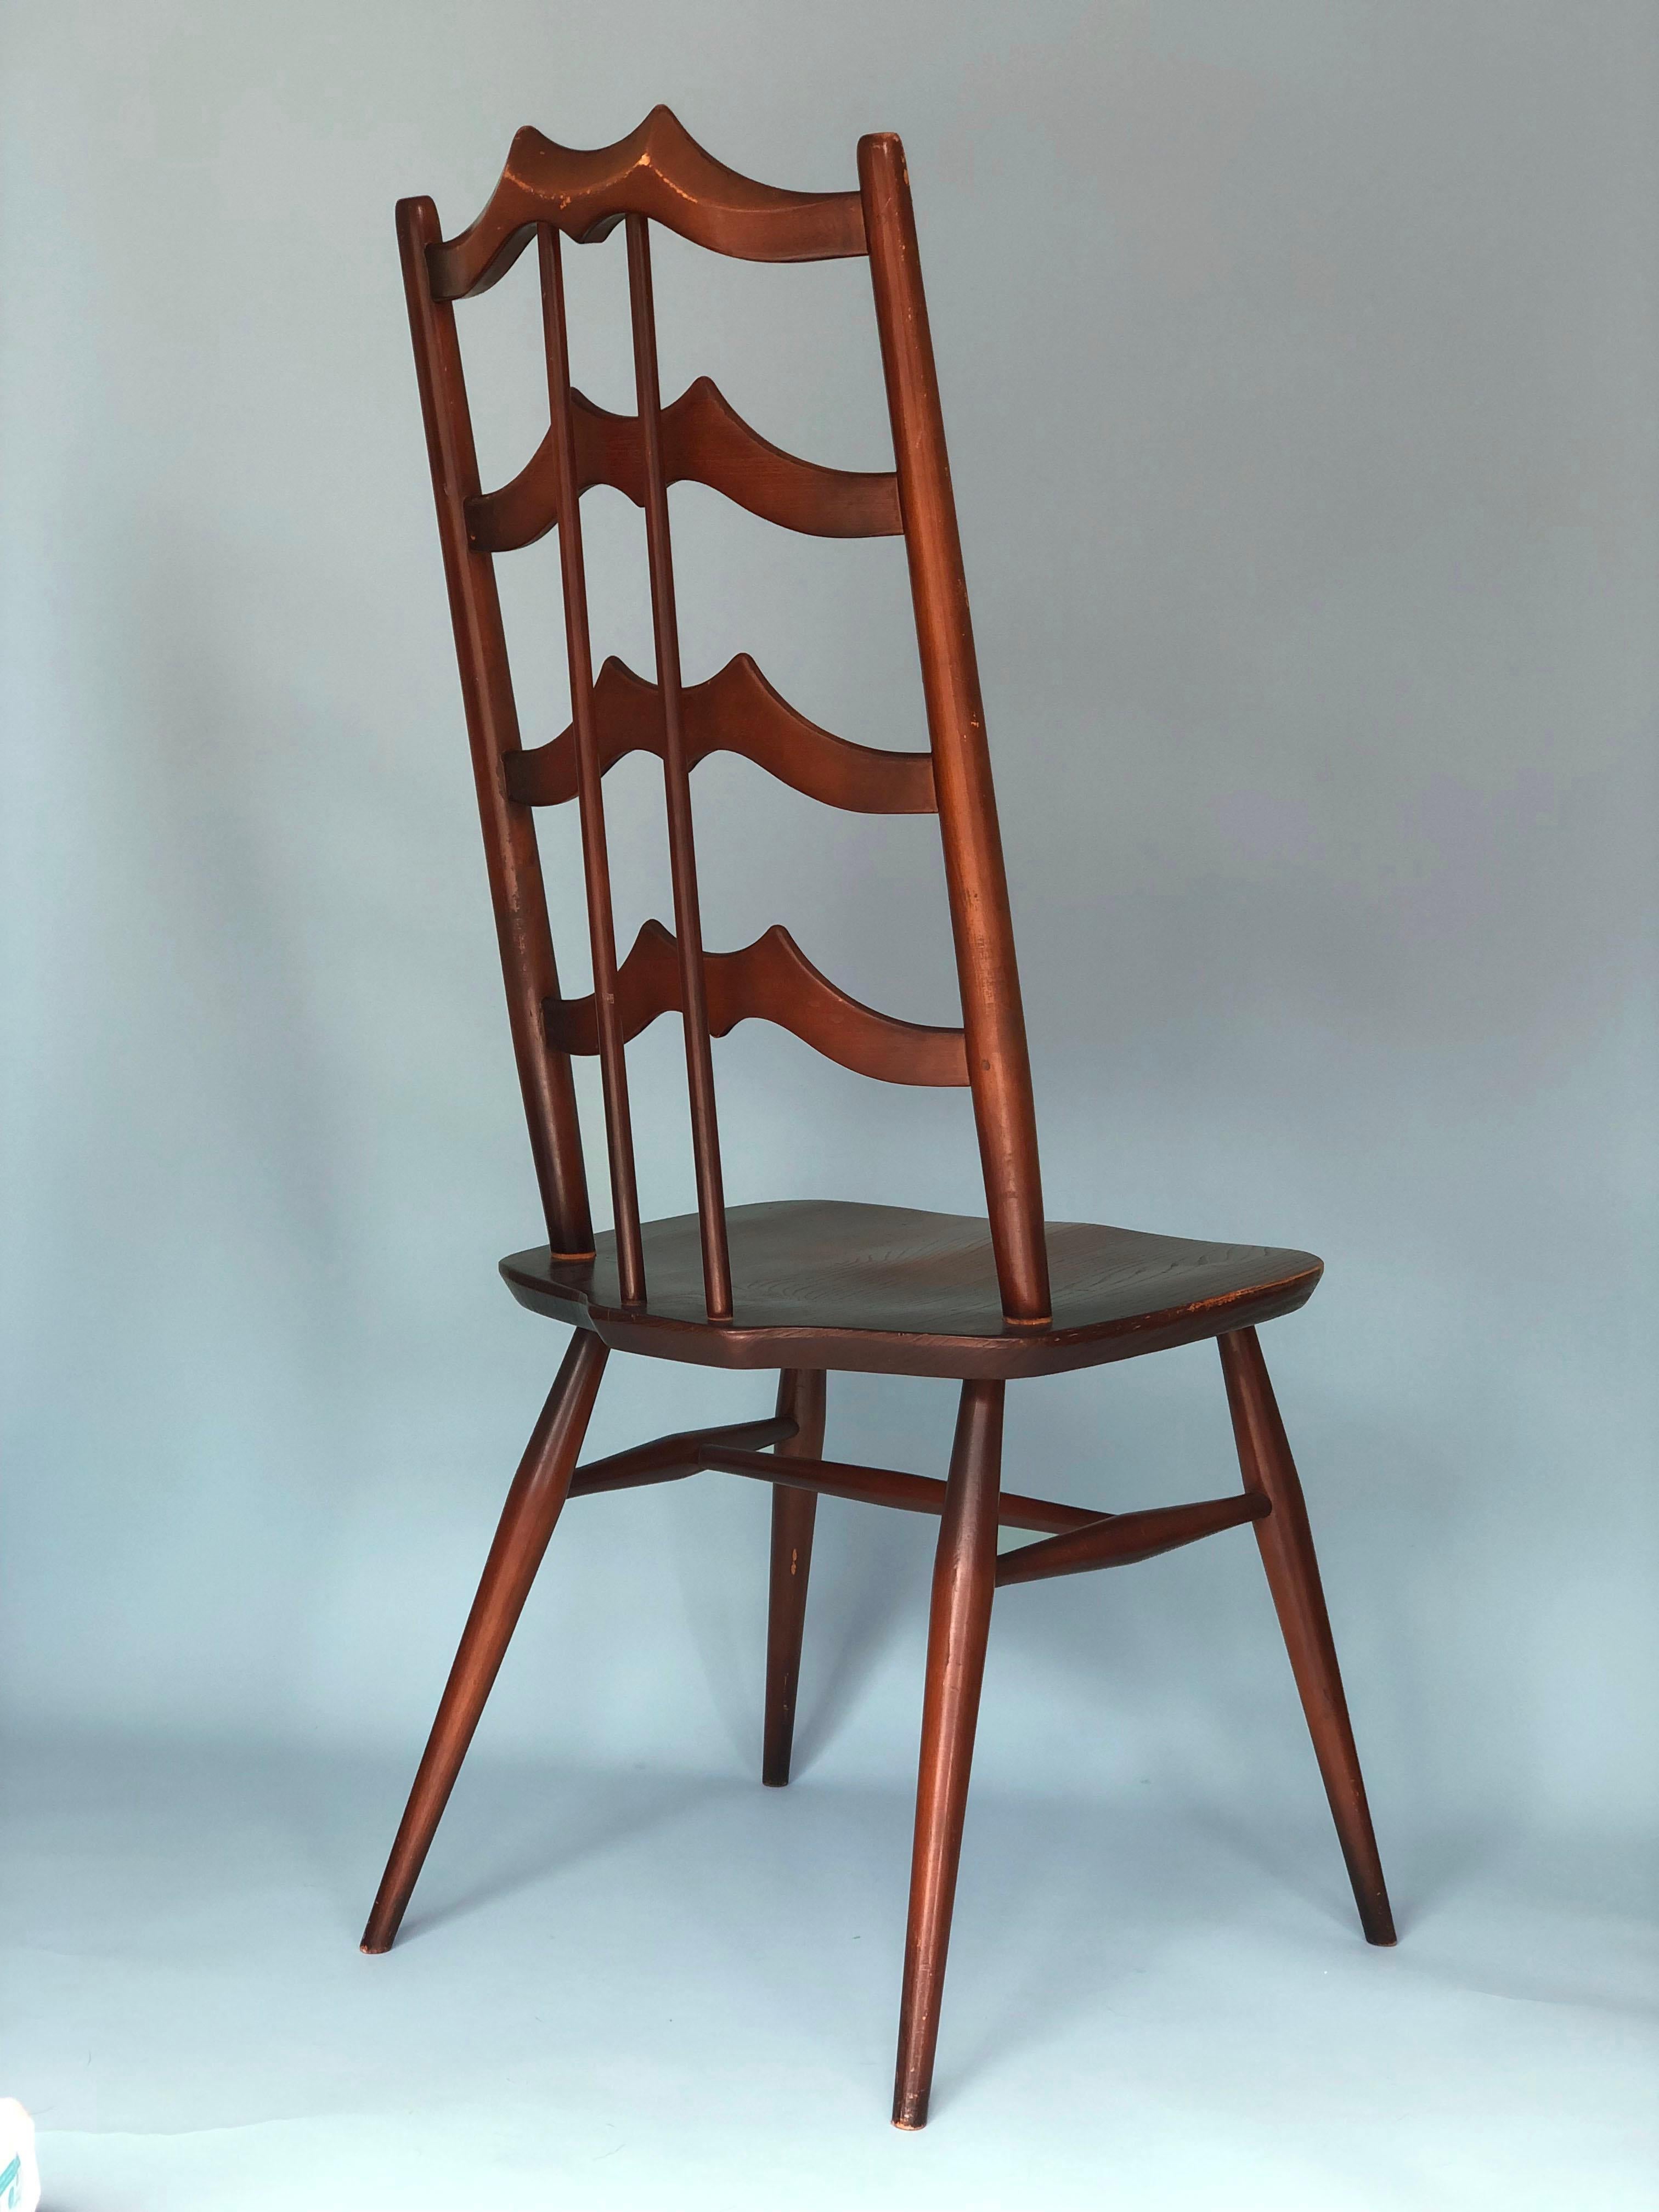 Ein Stuhl mit hoher Rückenlehne aus Nussbaumholz, entworfen von Lucian Ercolani für Ercol. Der Stuhl ist mit einem Aufkleber und einer Gravur versehen. Schönes Designstück.

Objekt: Stuhl
Designer: Lucian Ercolani für Ercol
Zuschreibungszeichen: Ein